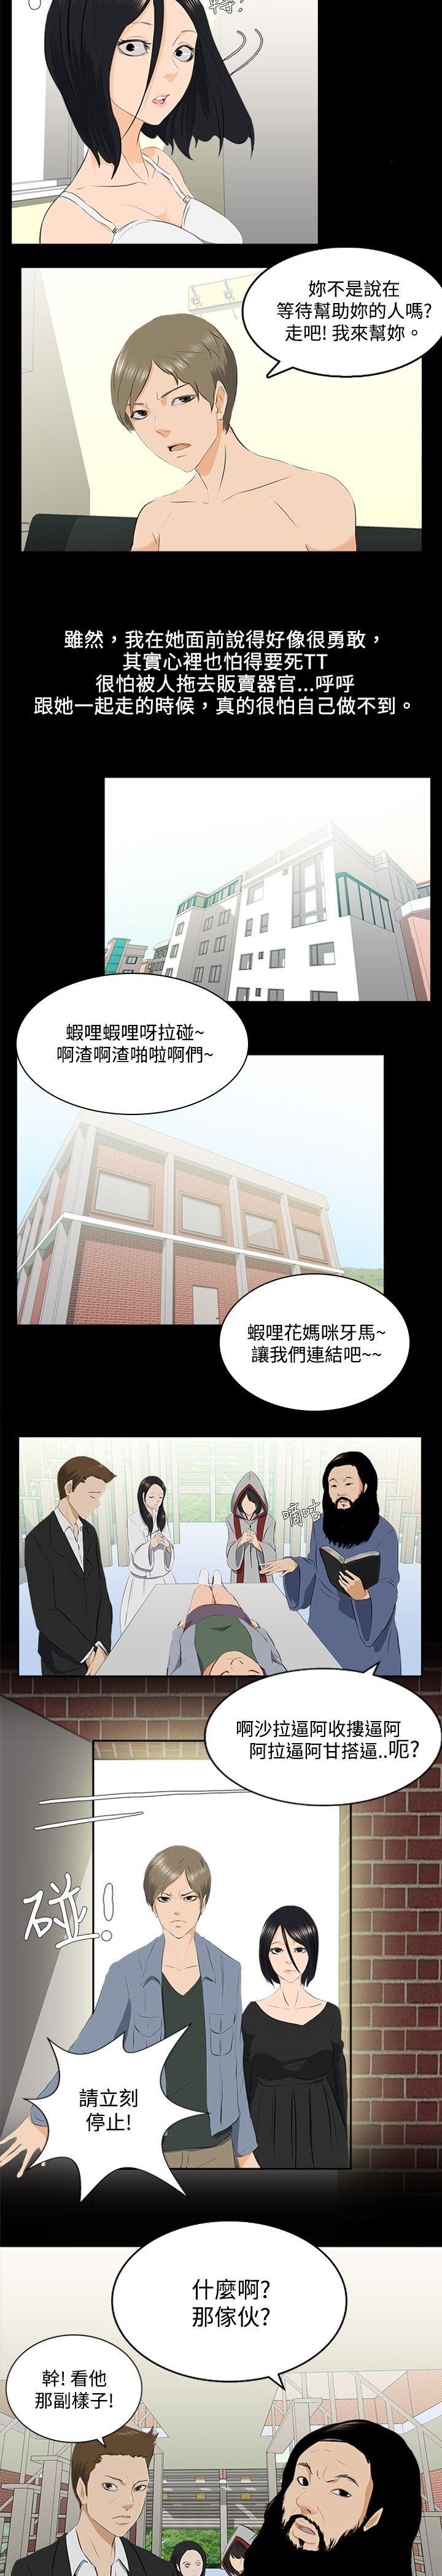 秘密Story  邪教之女(下) 漫画图片4.jpg